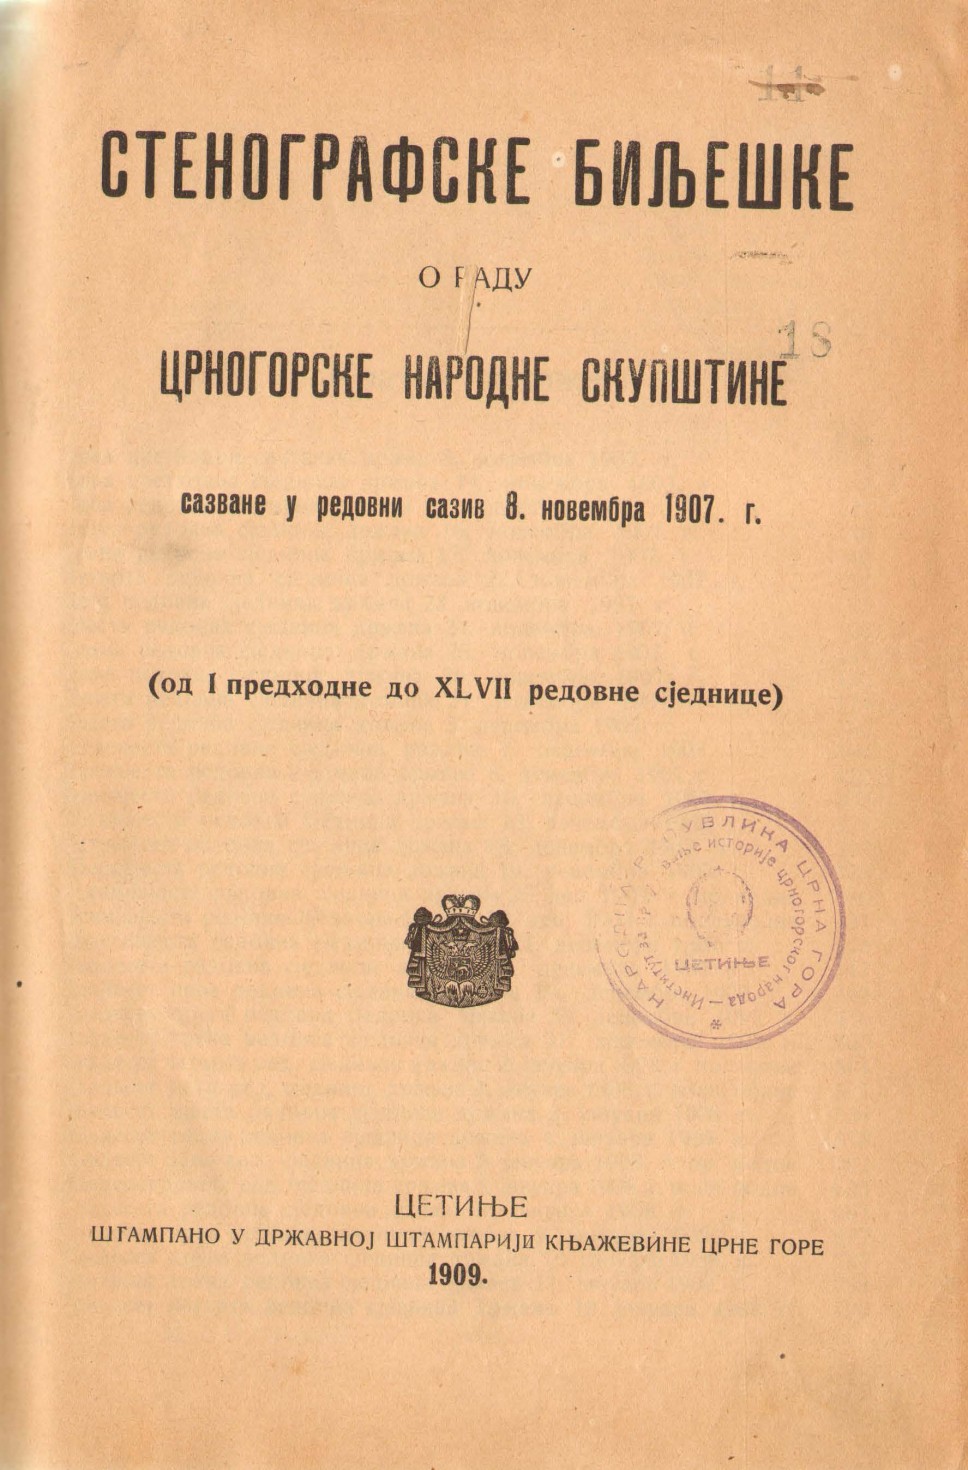 Stenografske bilješke crnogorske narodne skupštine, 1907